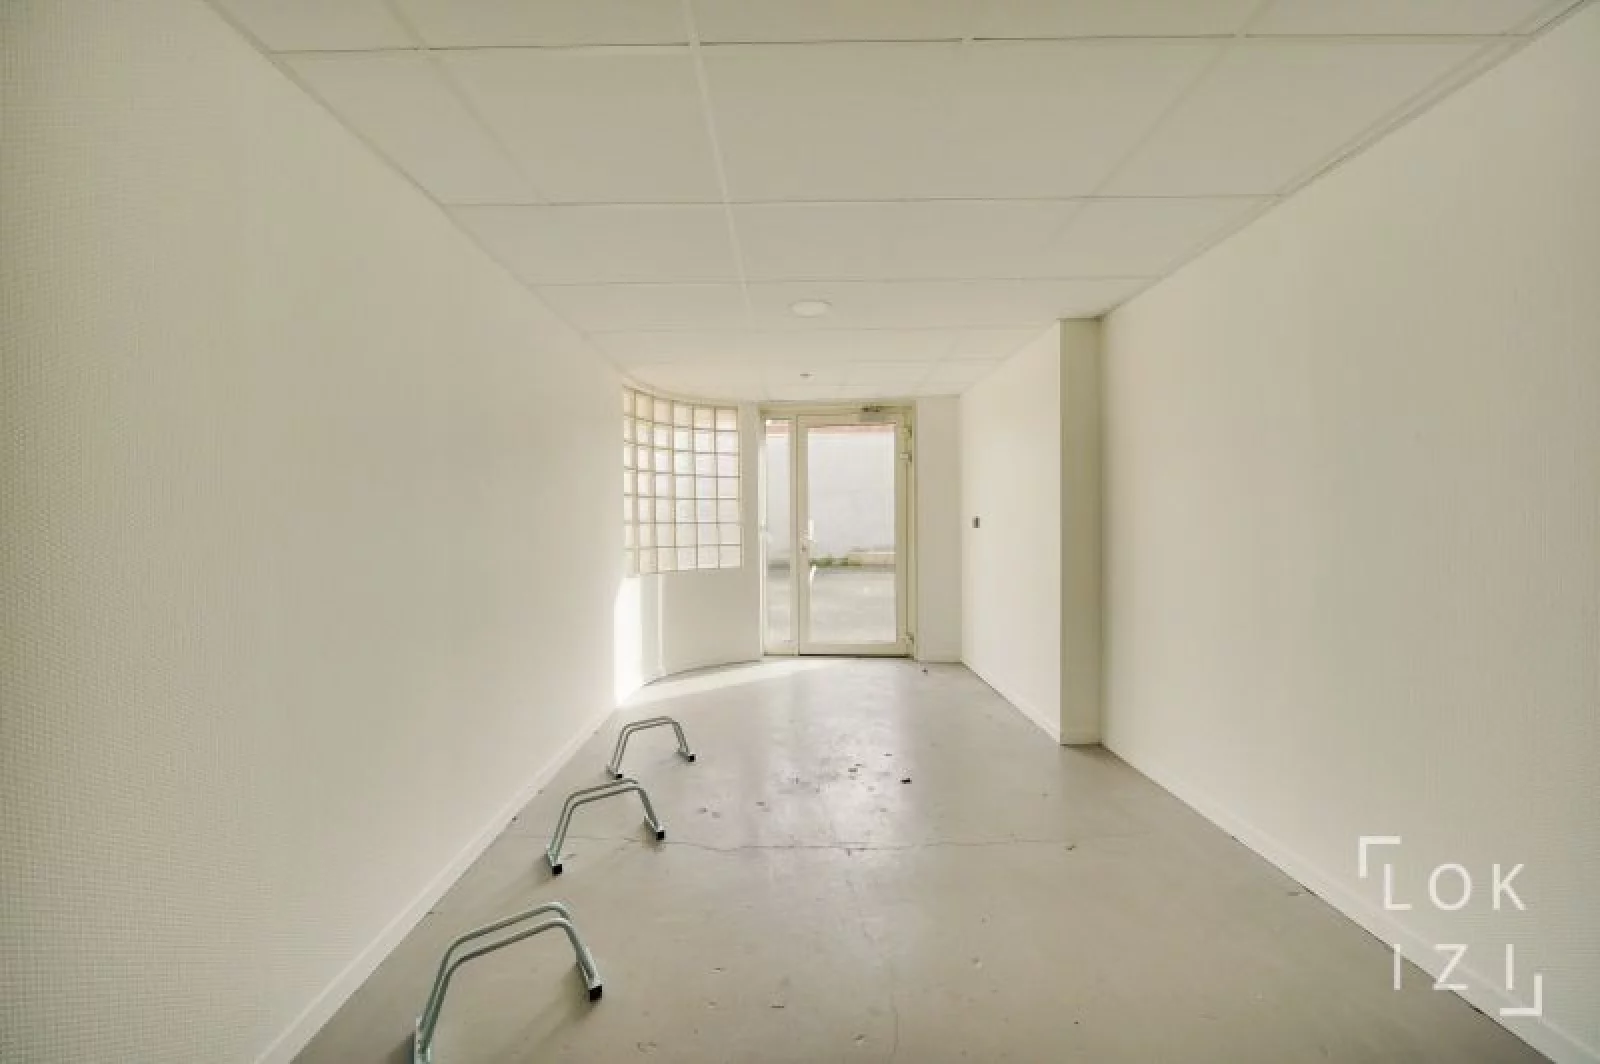 Location appartement meublé 2 pièces 54m² (Bordeaux - St Augustin)